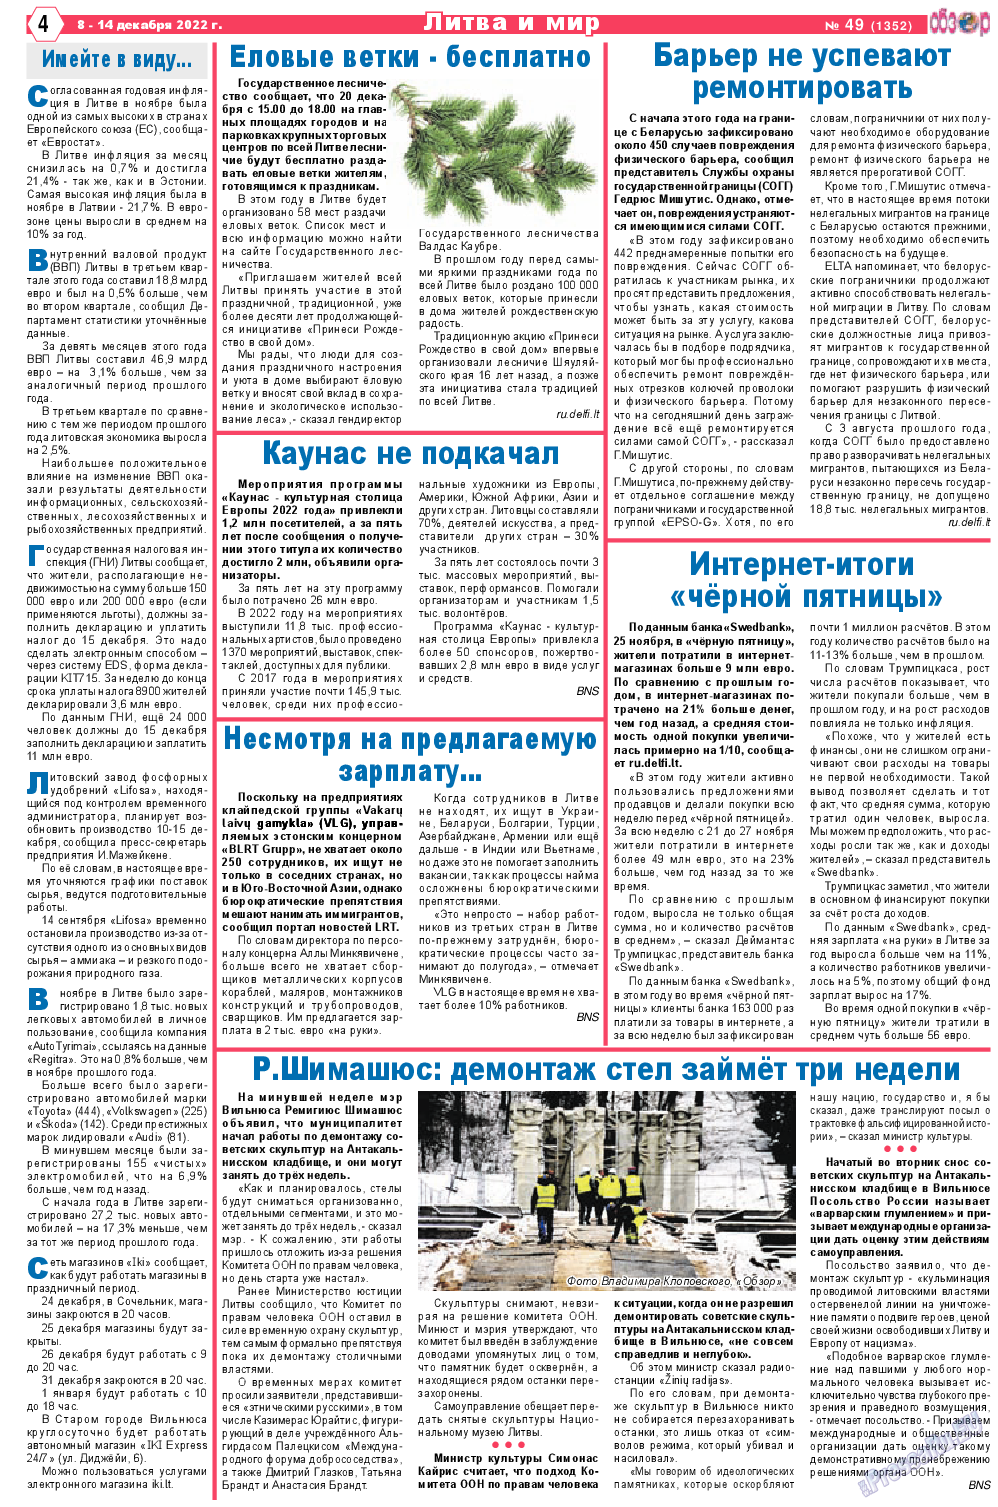 Обзор, газета. 2022 №49 стр.4